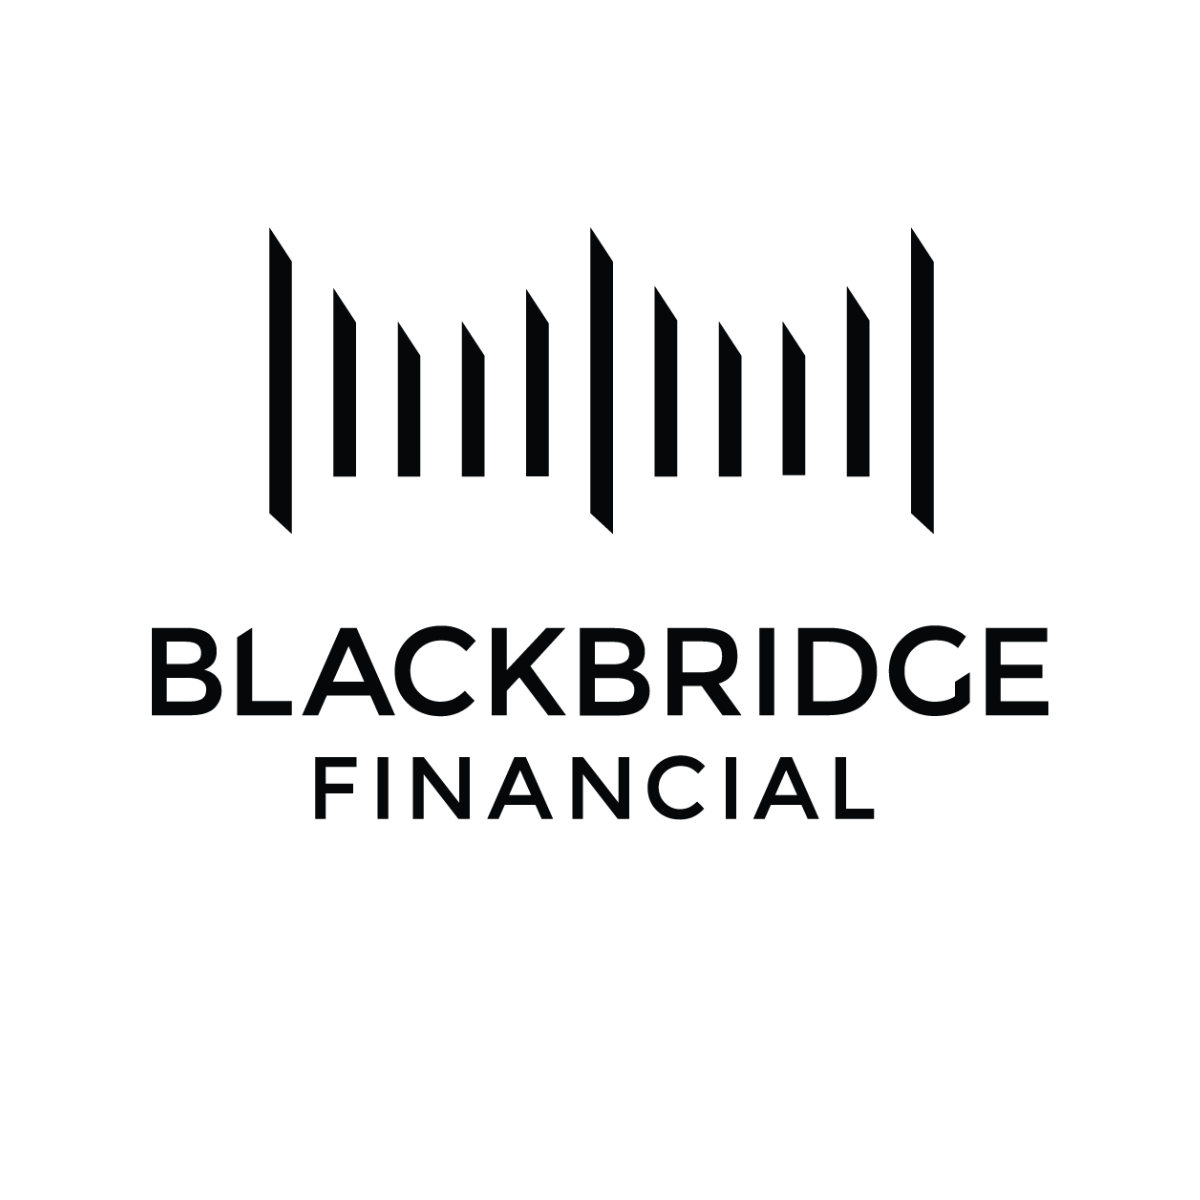 Terry Colen, Blackbridge Financial